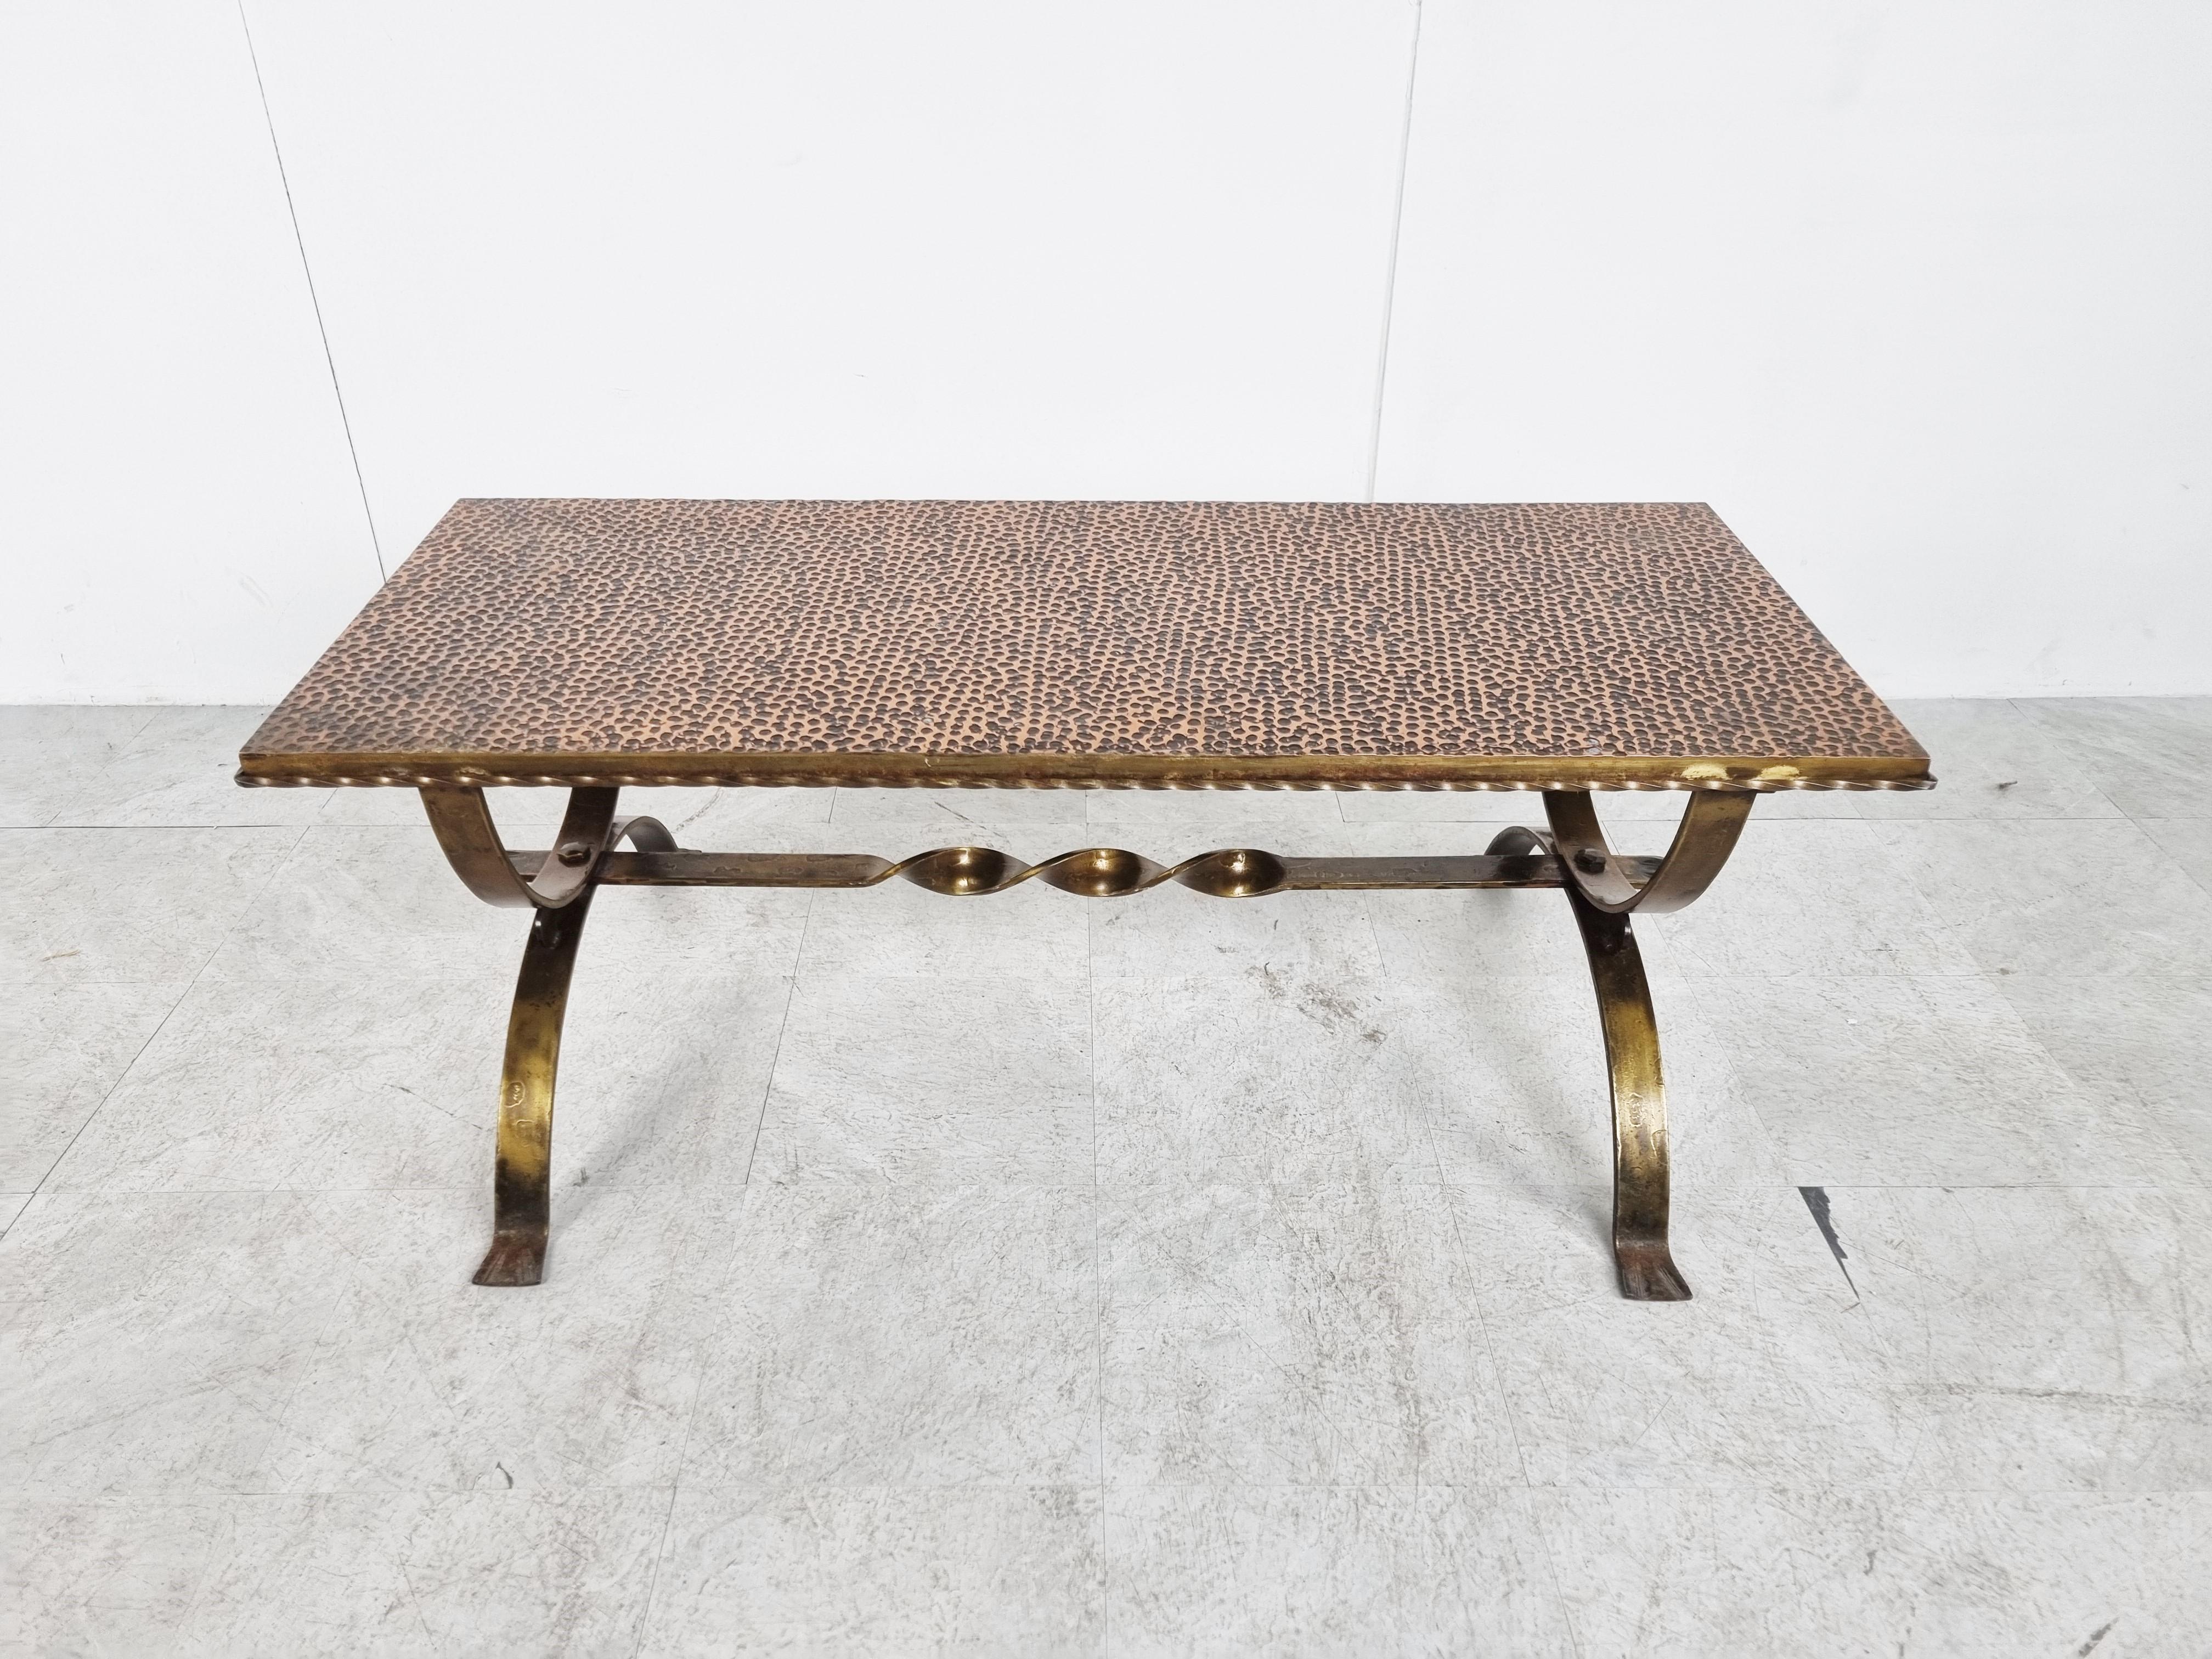 Exquise table basse en fer forgé doré du milieu du siècle dernier, dans le style de Raymond Subes.

Base magnifiquement travaillée avec un sommet en relief en cuivre contrastant.

La combinaison des matériaux et de l'artisanat crée cette belle